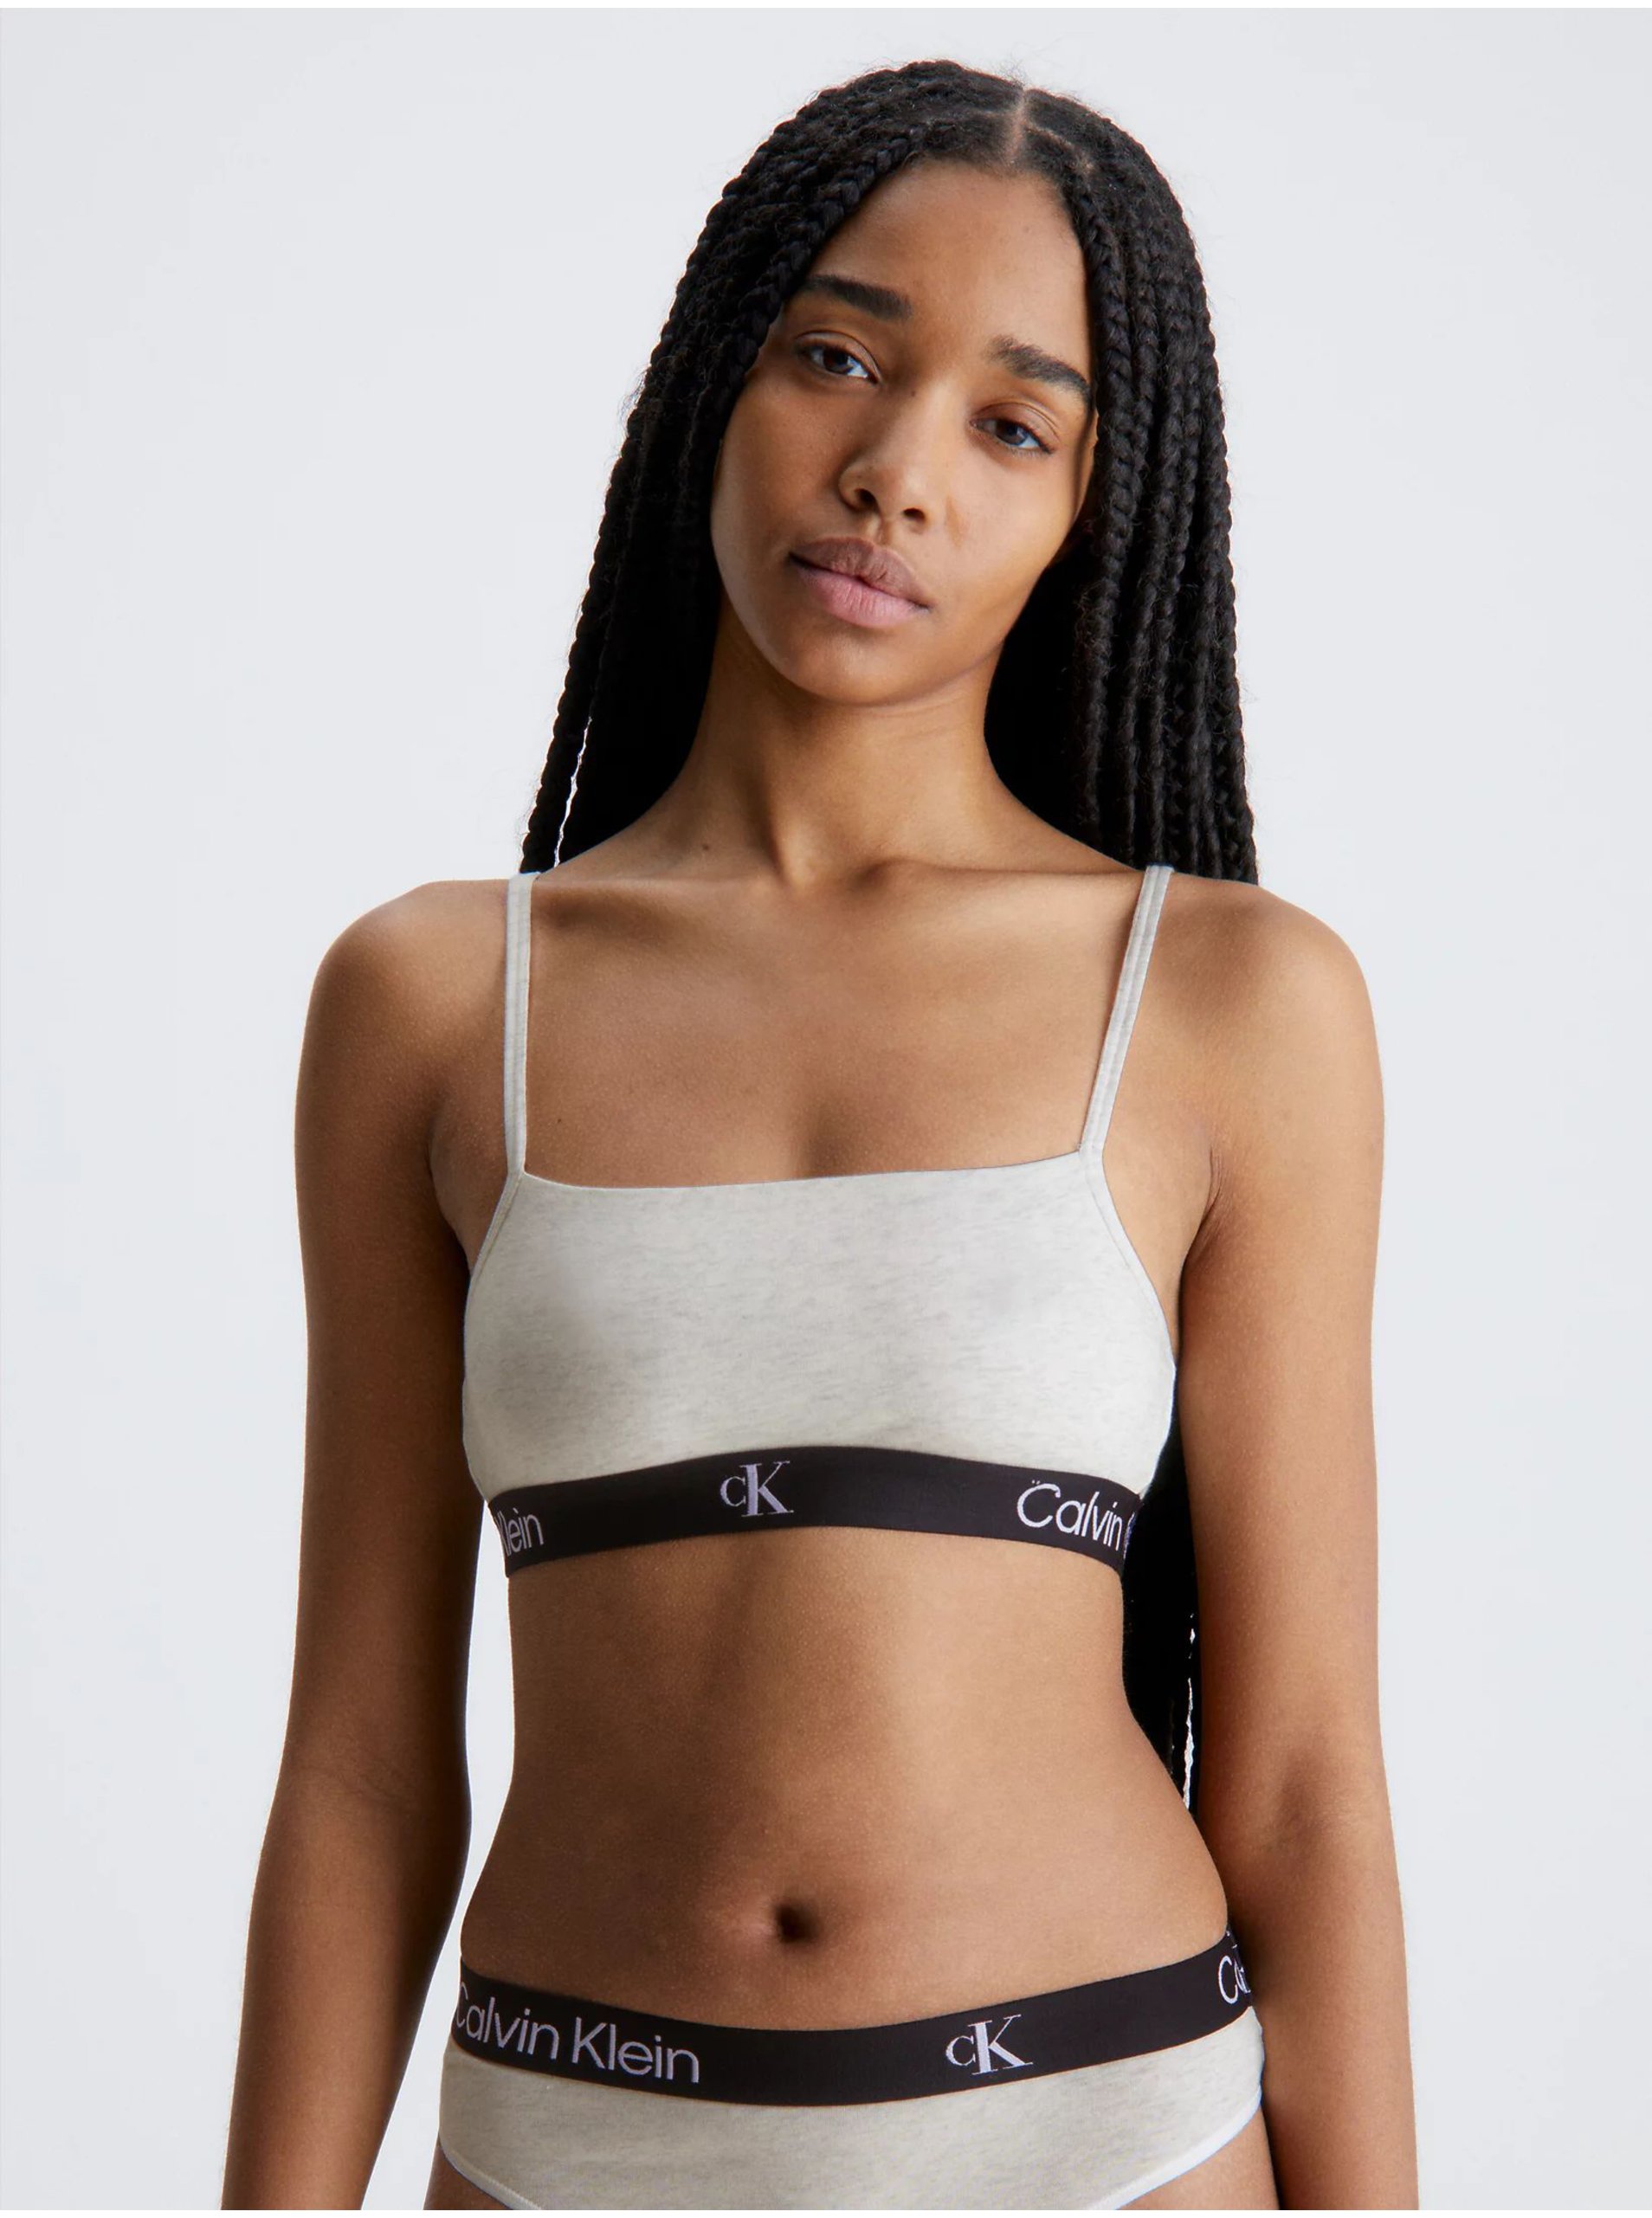 Calvin Klein Underwear Women's Bras